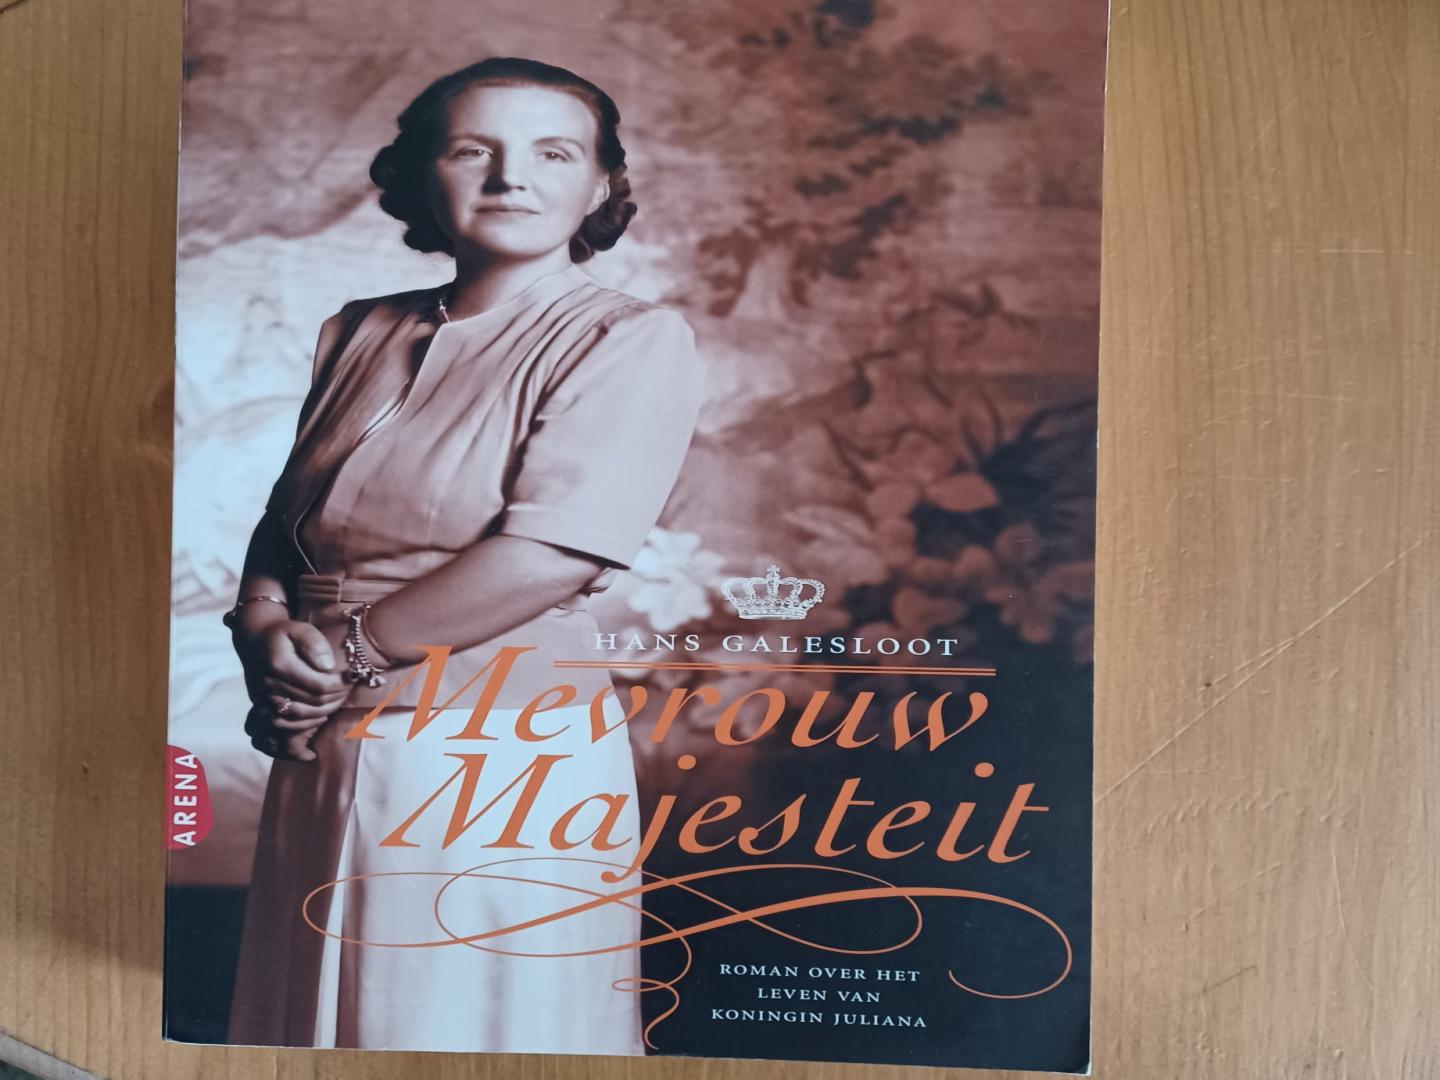 Galesloot, Hans - Mevrouw Majesteit / roman over het leven van koningin Juliana